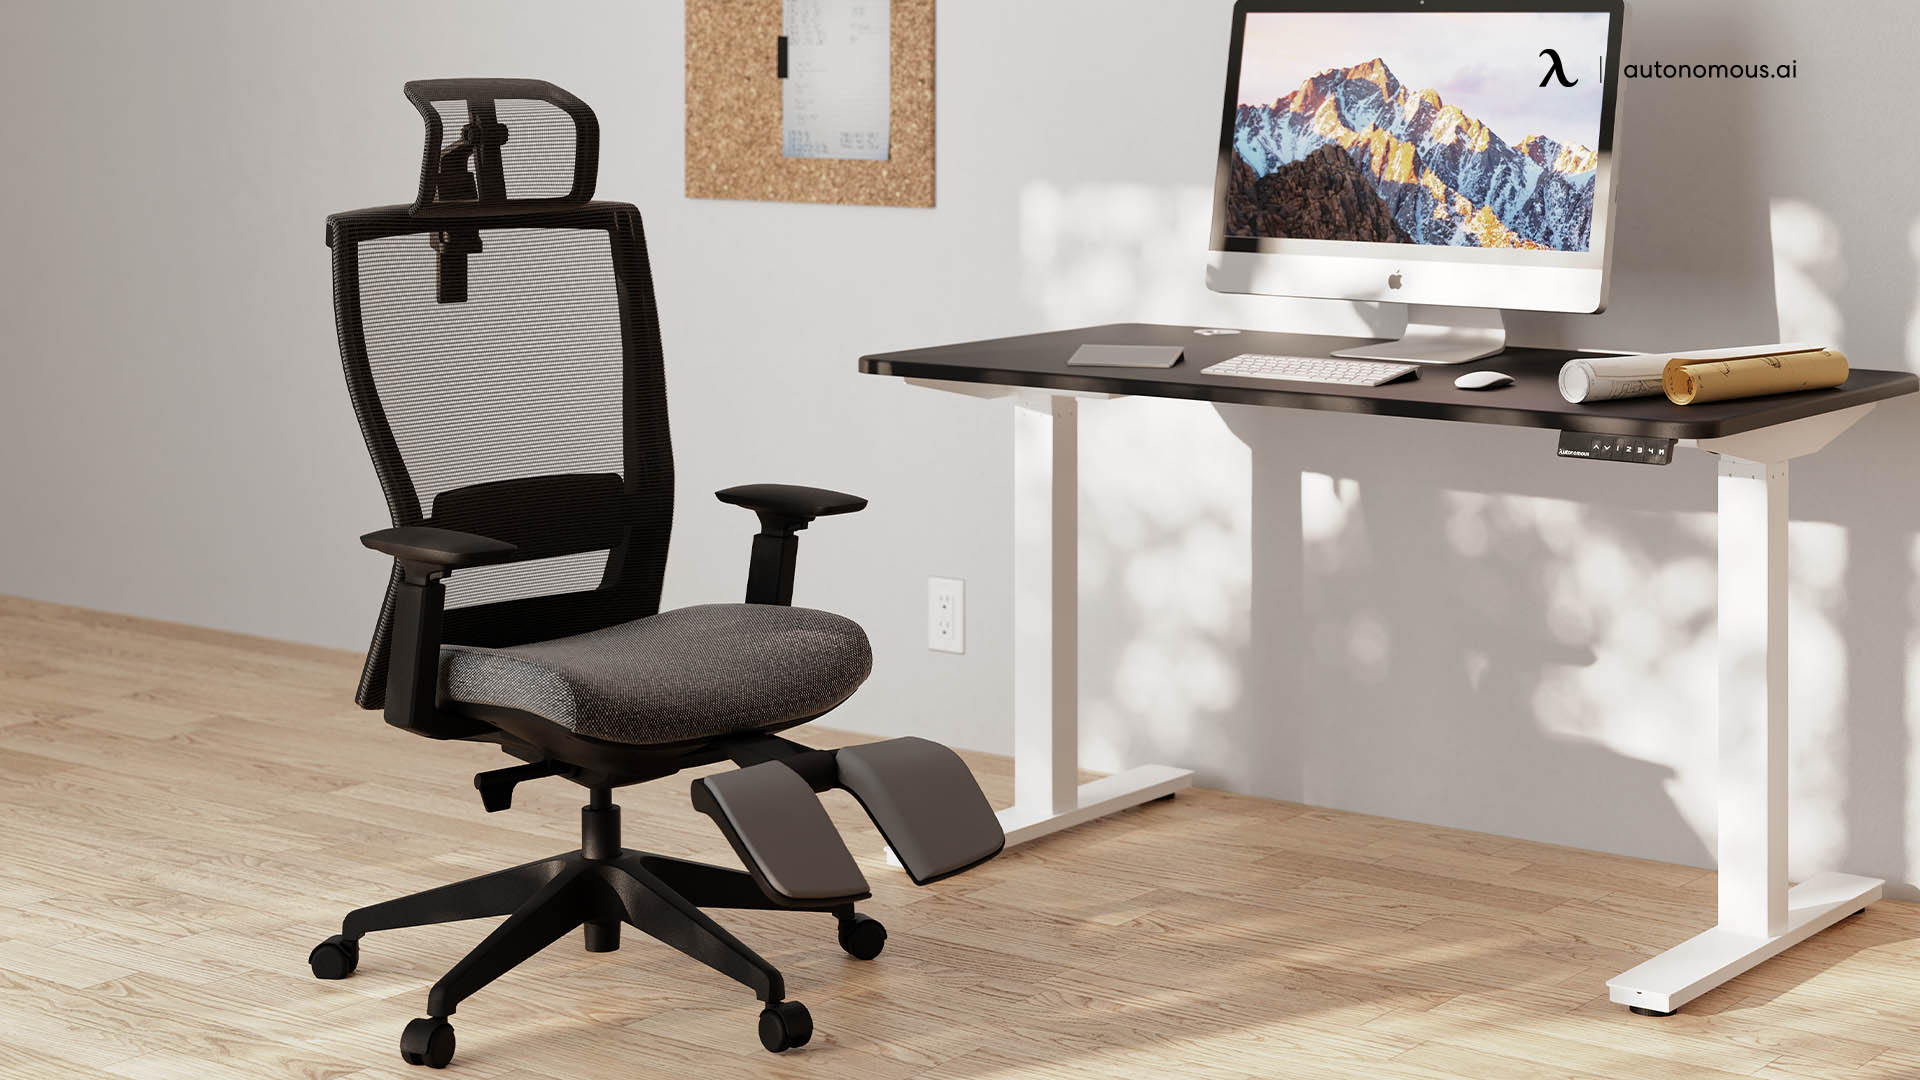 ErgoChair Recline high back home office chair